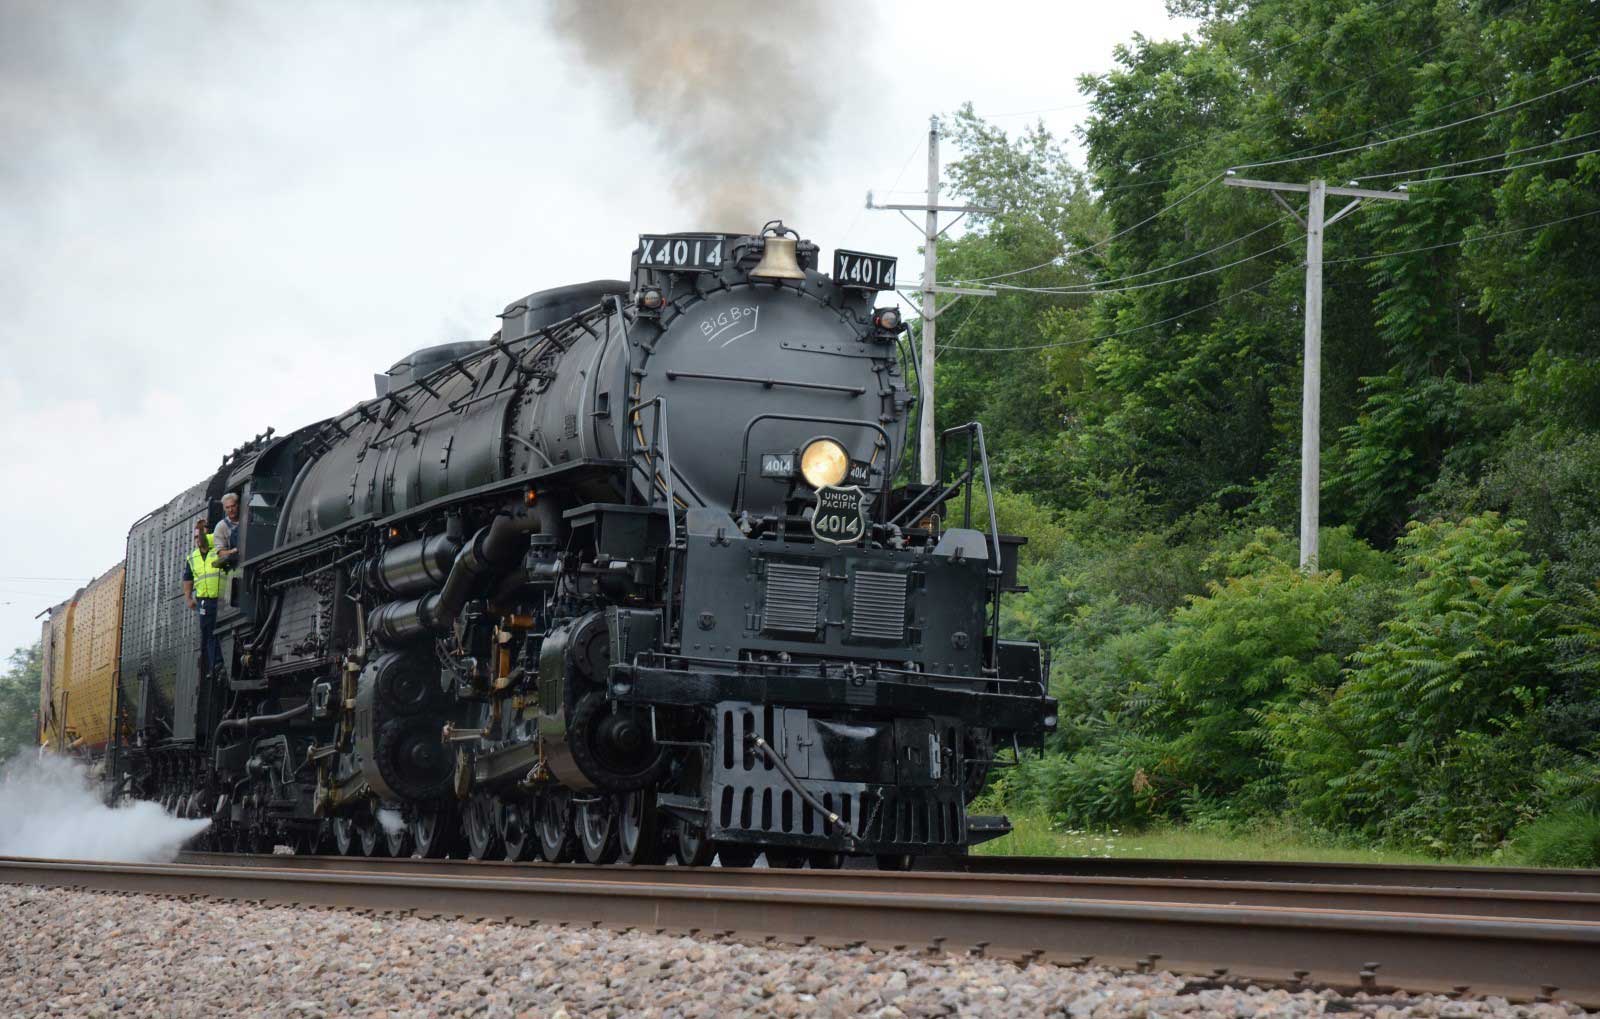 Train using steam